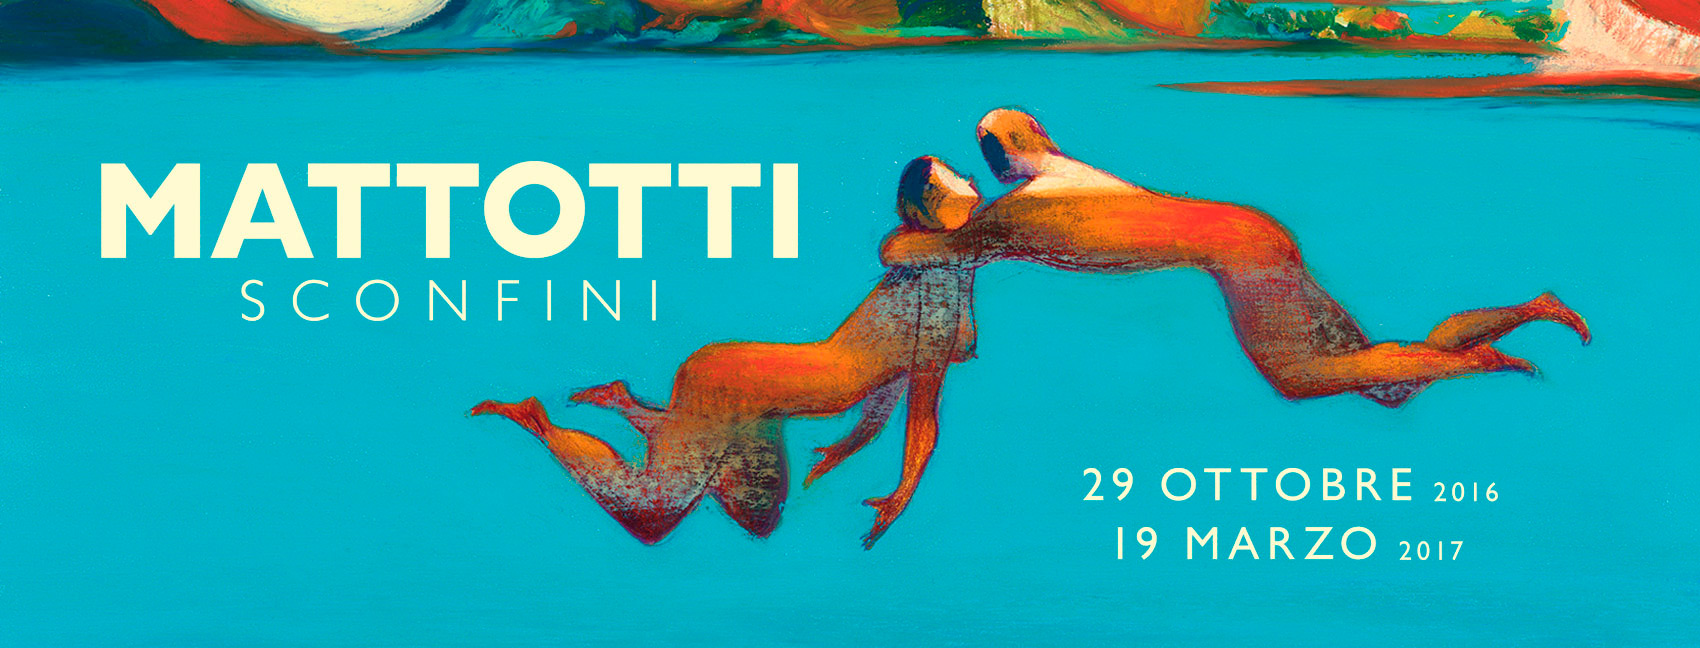 Lorenzo Mattotti, &#8220;Sconfini&#8221;, la mostra a Udine